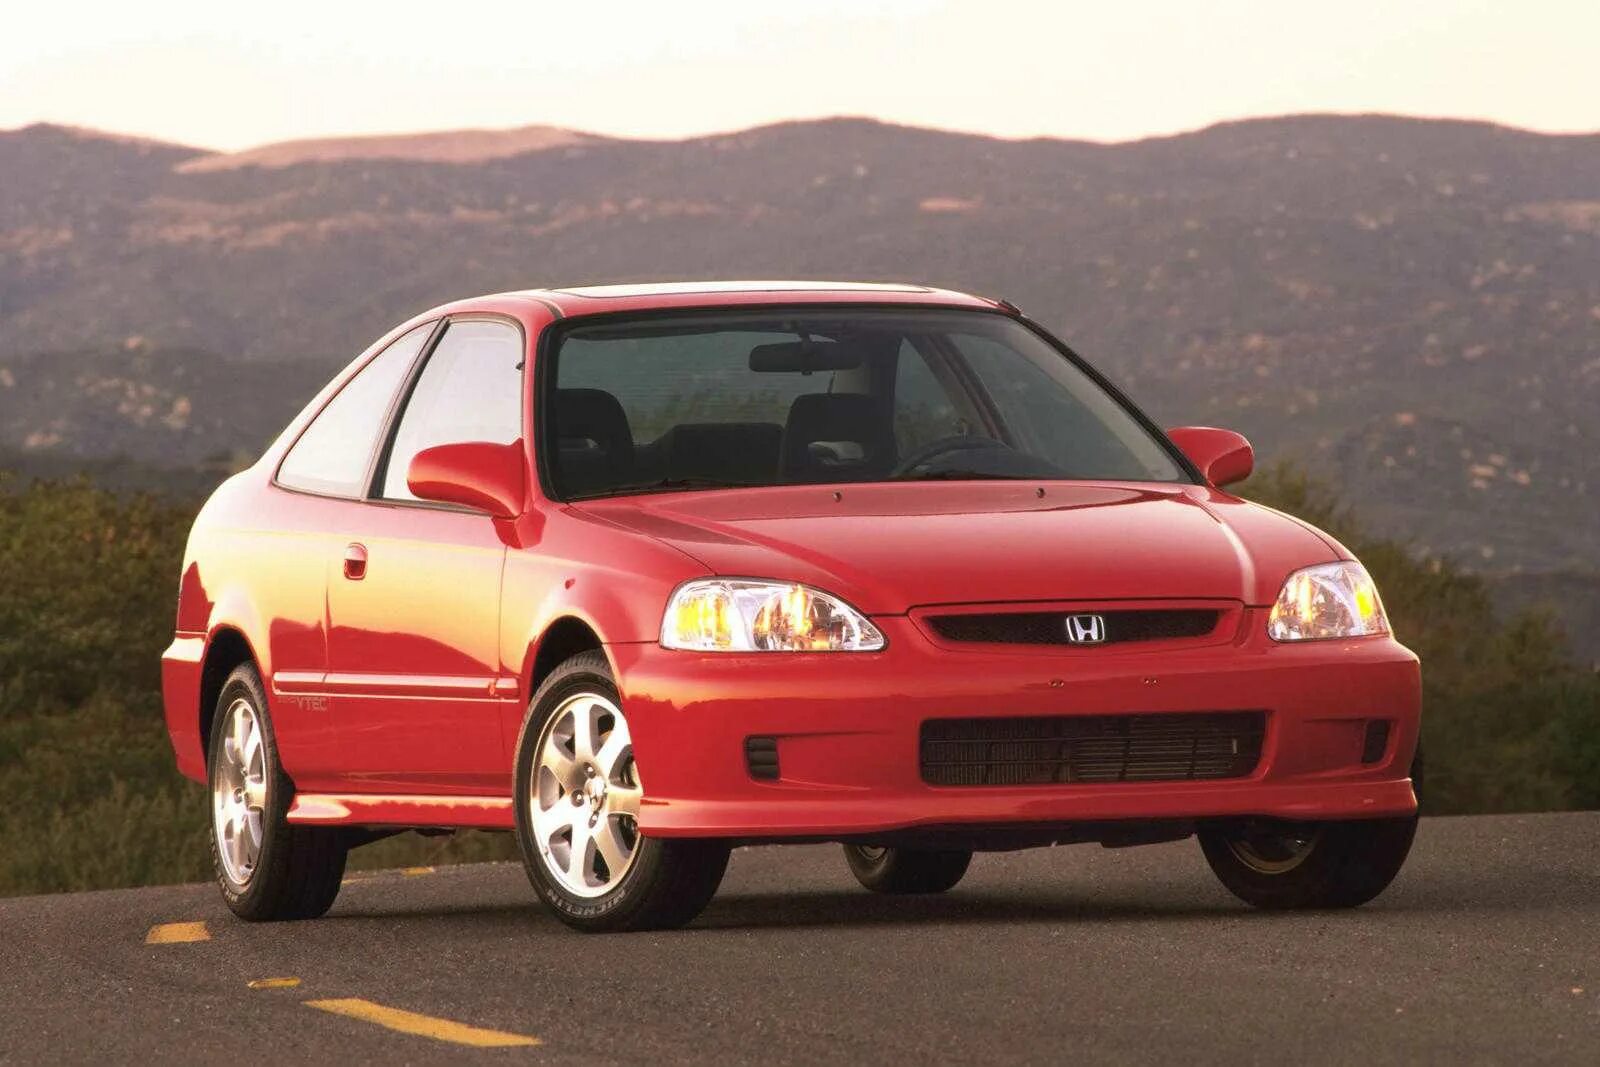 Honda Civic si Coupe 2000. Honda Civic si 1999. Honda Civic 2000 купе. Honda Civic si Coupe 1999. Старые honda